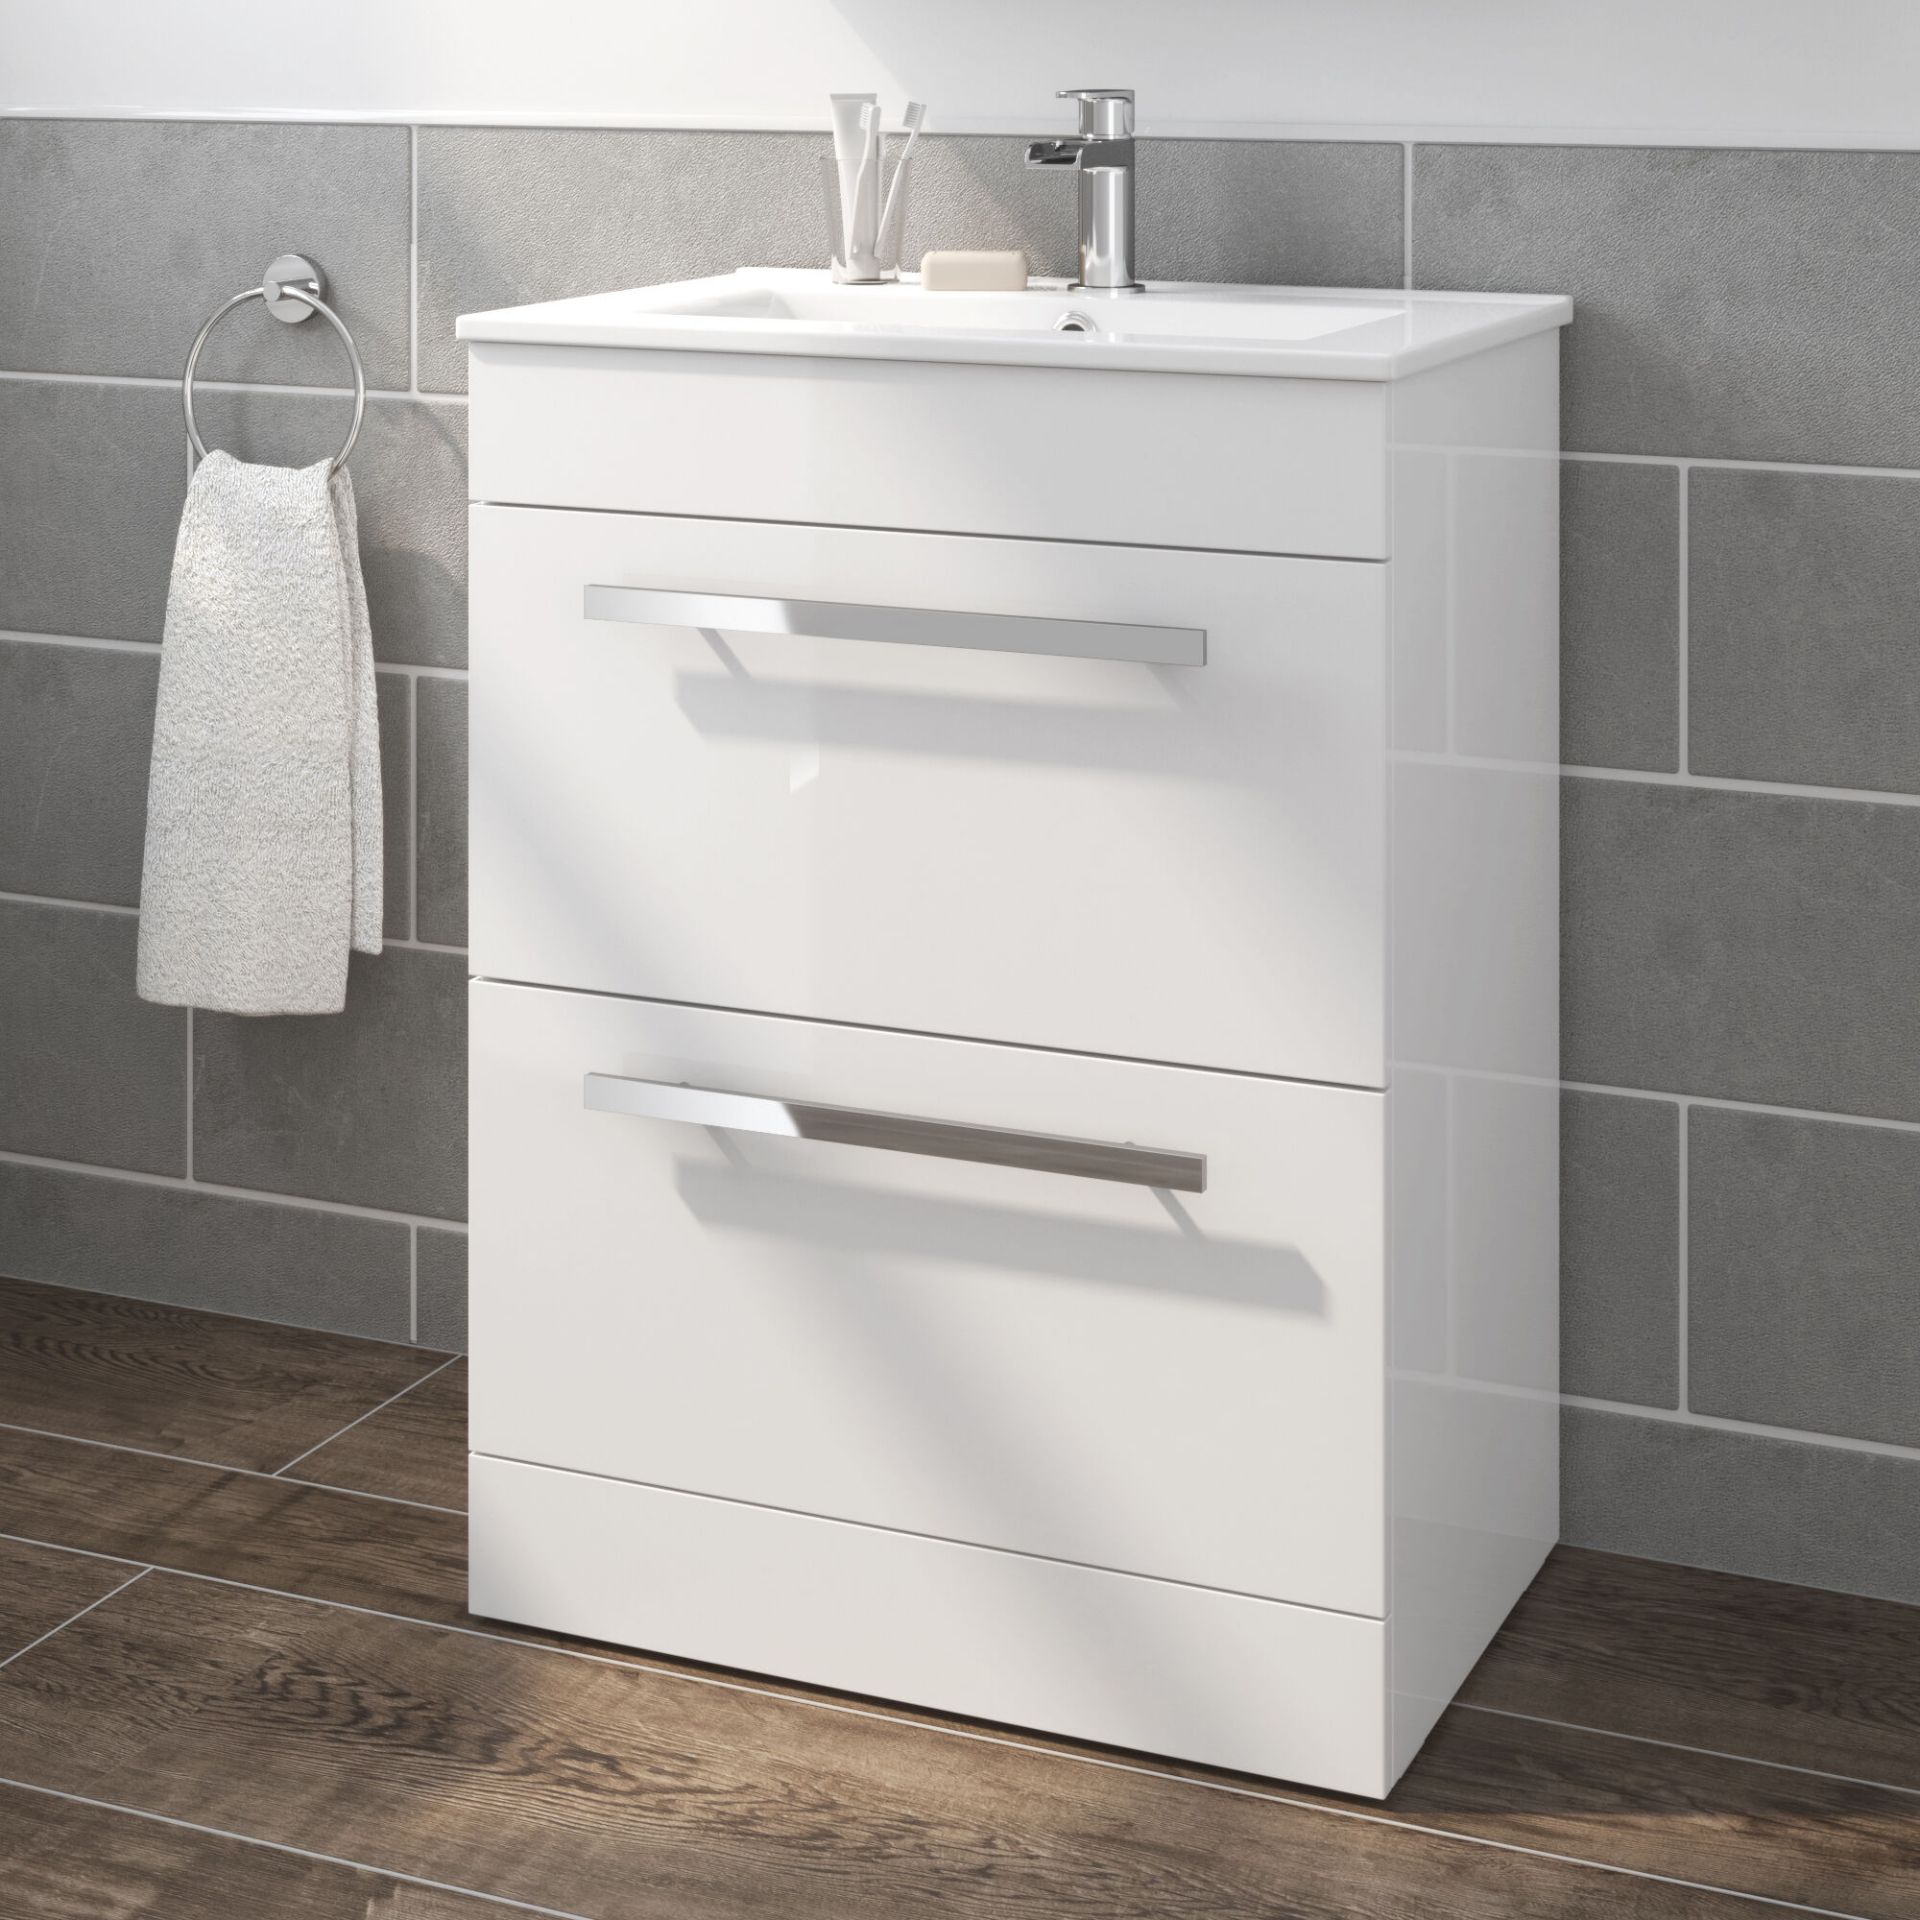 (JM31) 600mm Avon High Gloss White Double Drawer Basin Cabinet - Floor Standing. RRP £499.99.